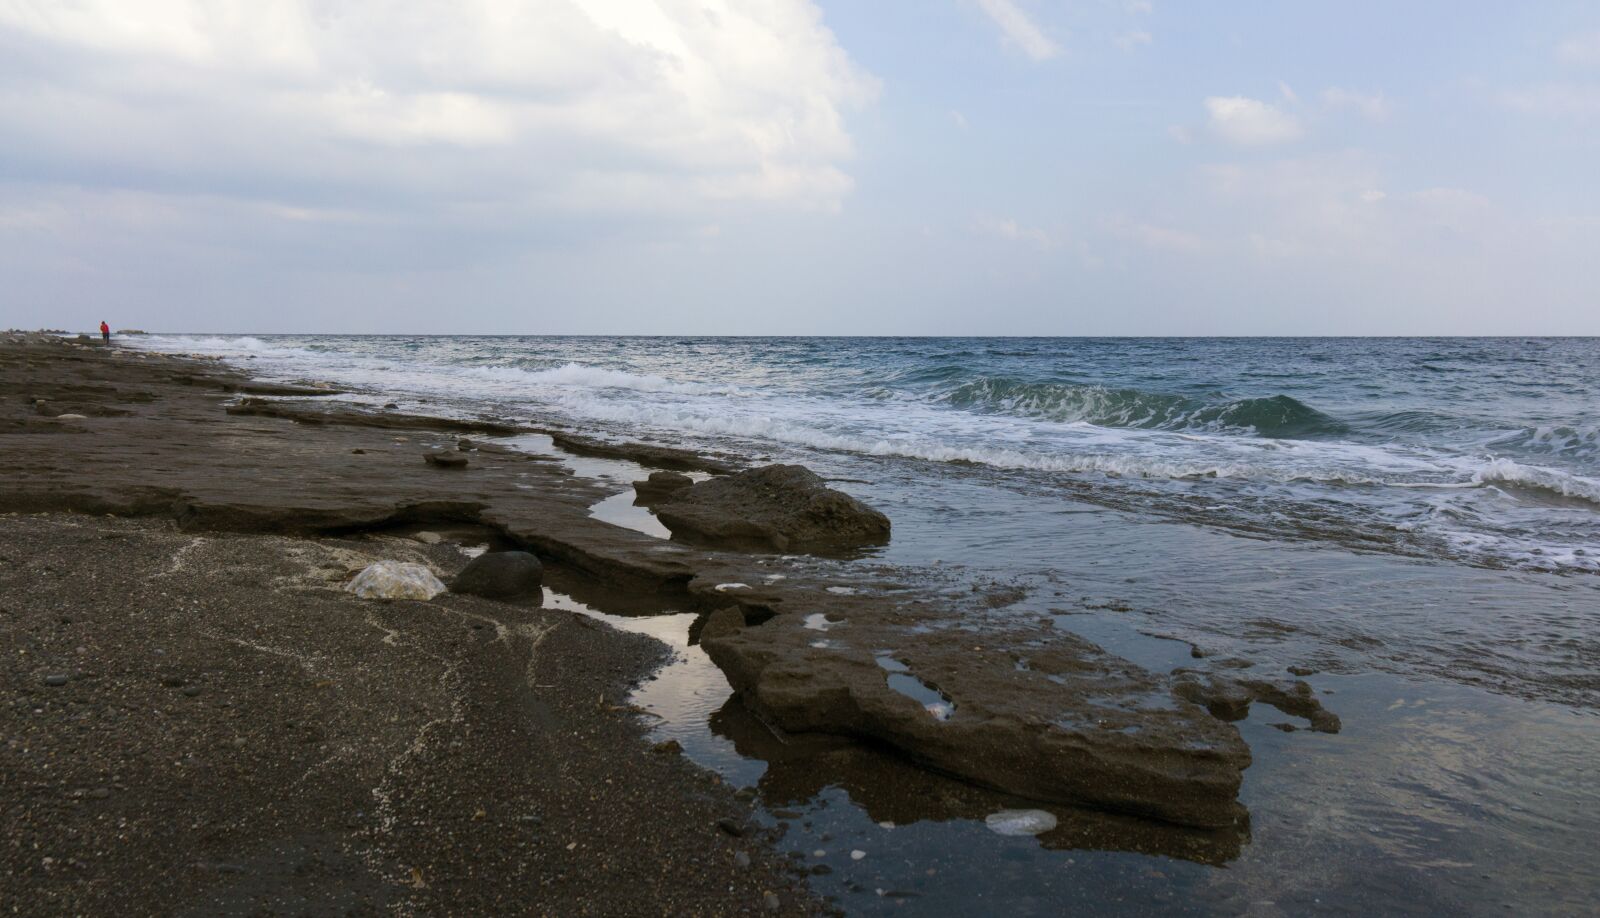 Sony Alpha NEX-7 + Sony E 16-50mm F3.5-5.6 PZ OSS sample photo. Santorini, beach, sea photography